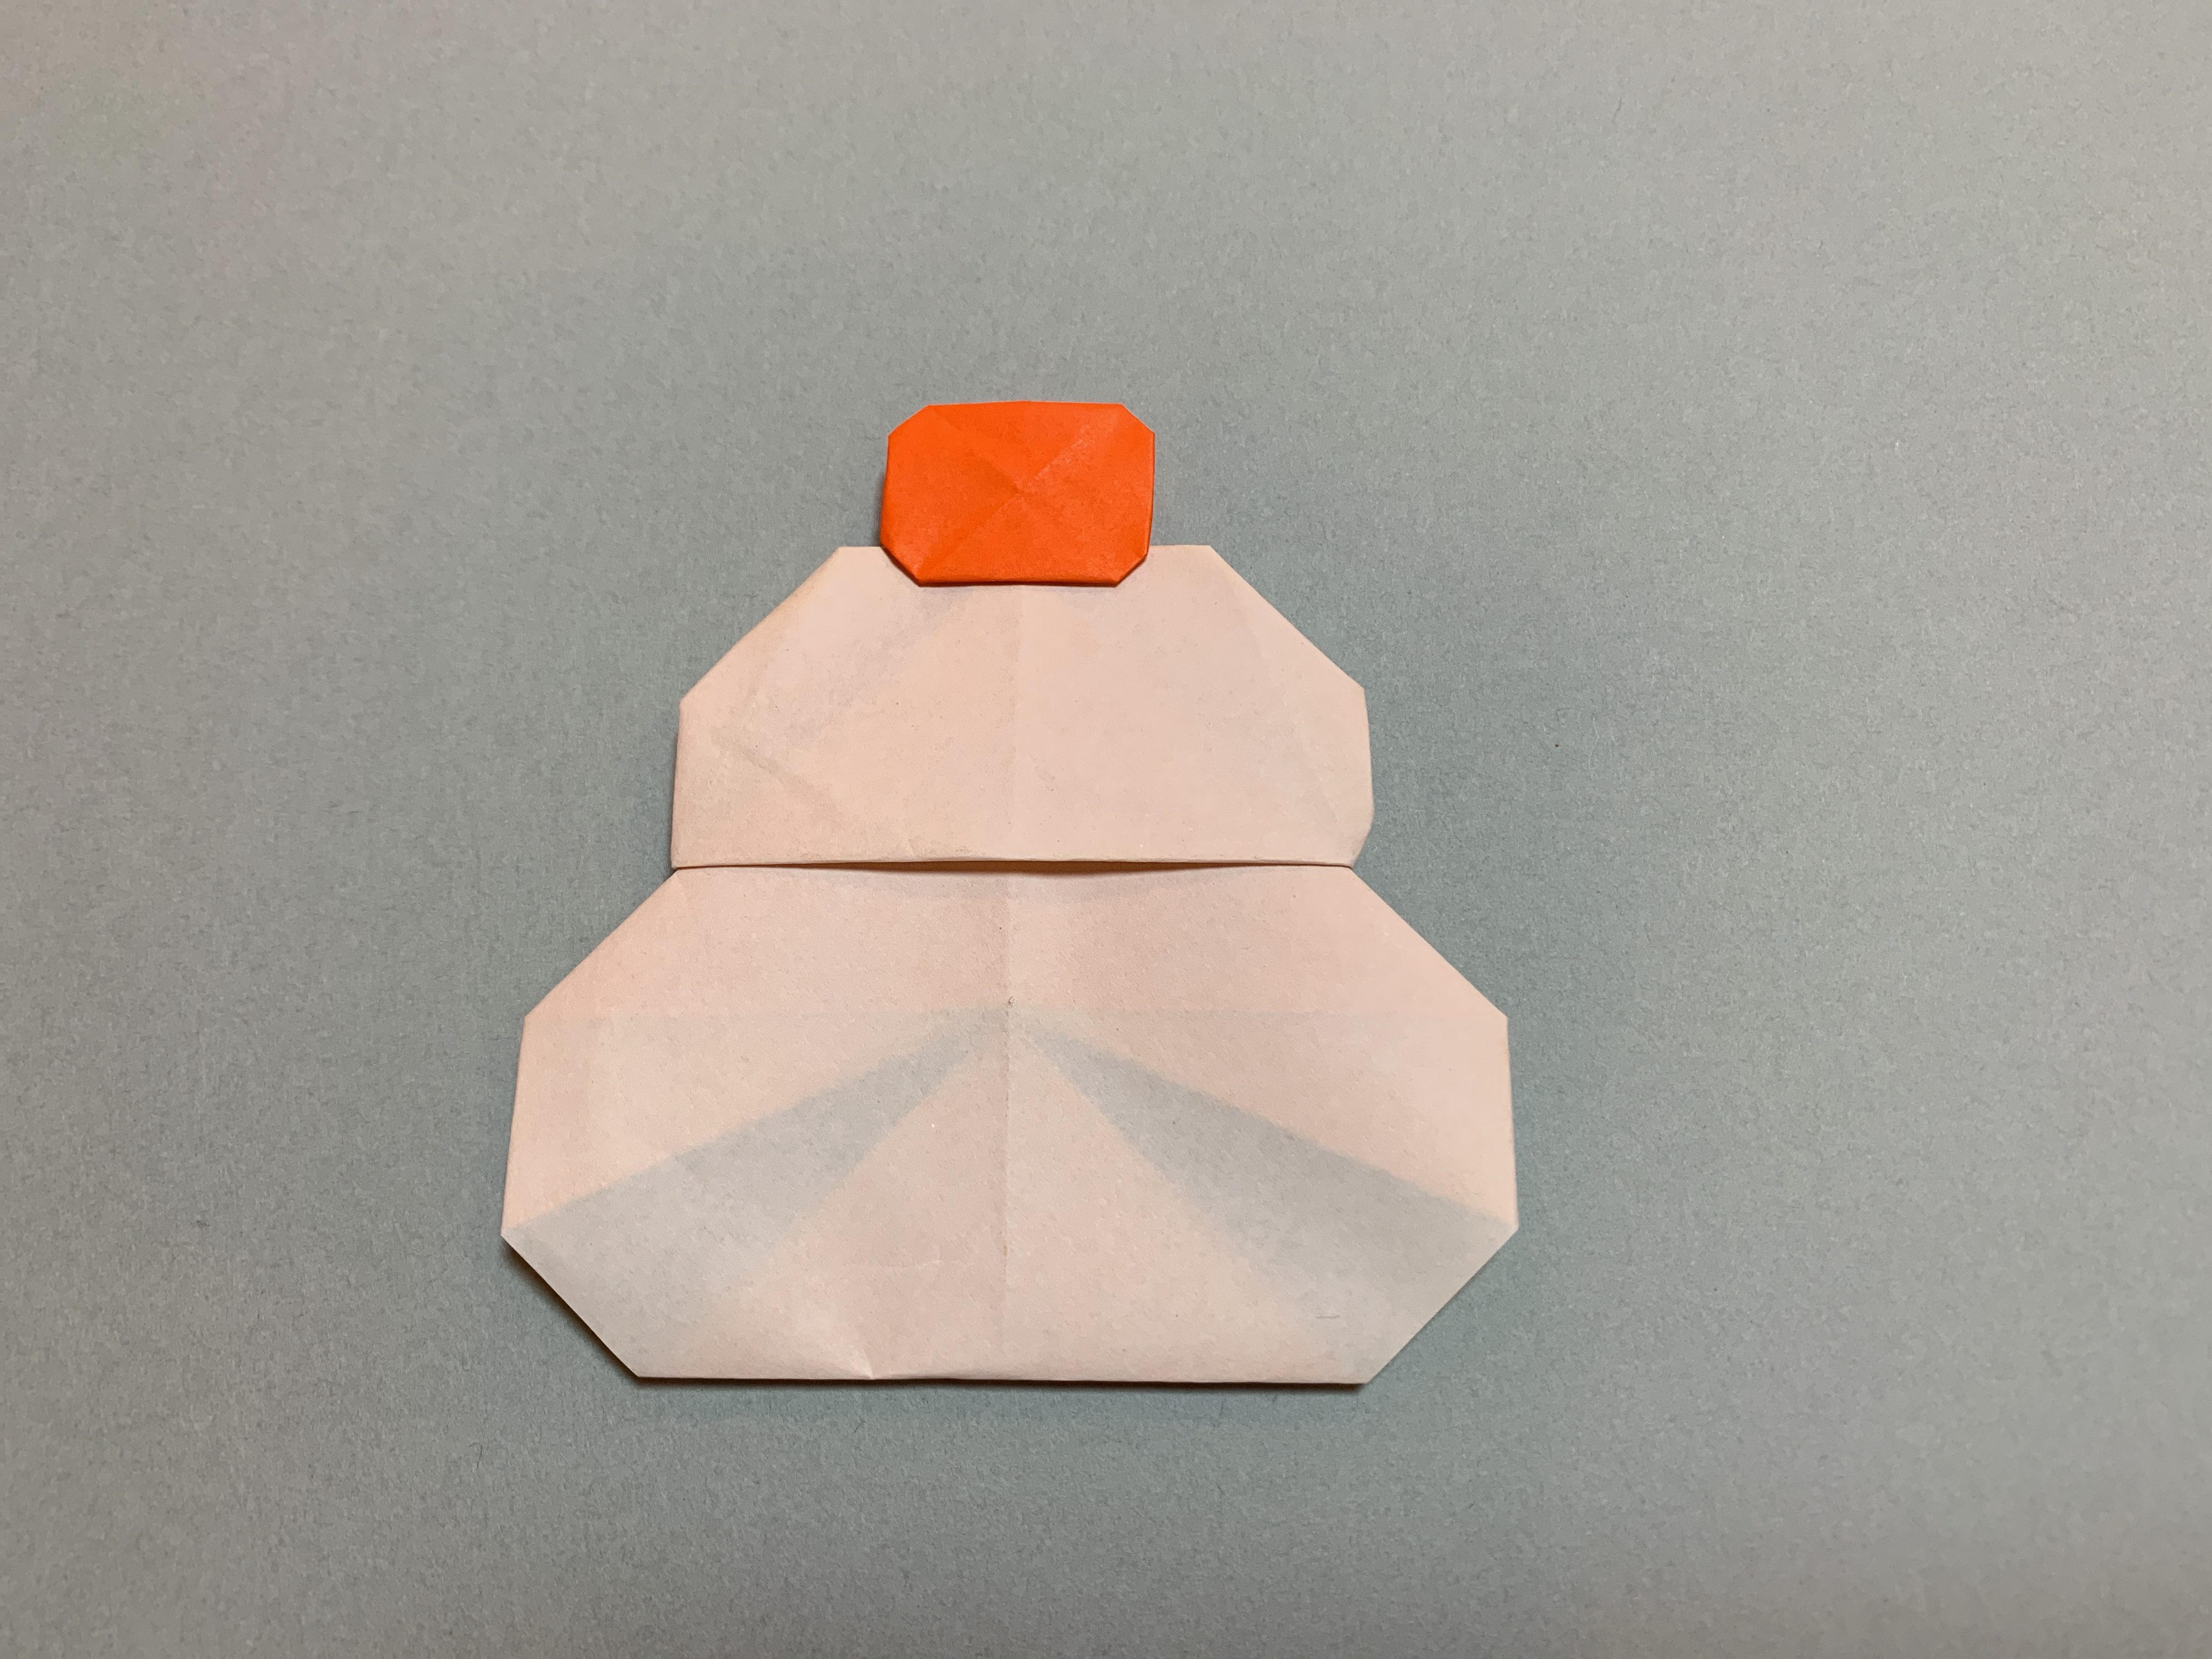 折り紙でお正月飾りを作ろう 3歳でもできる簡単なデザイン5選